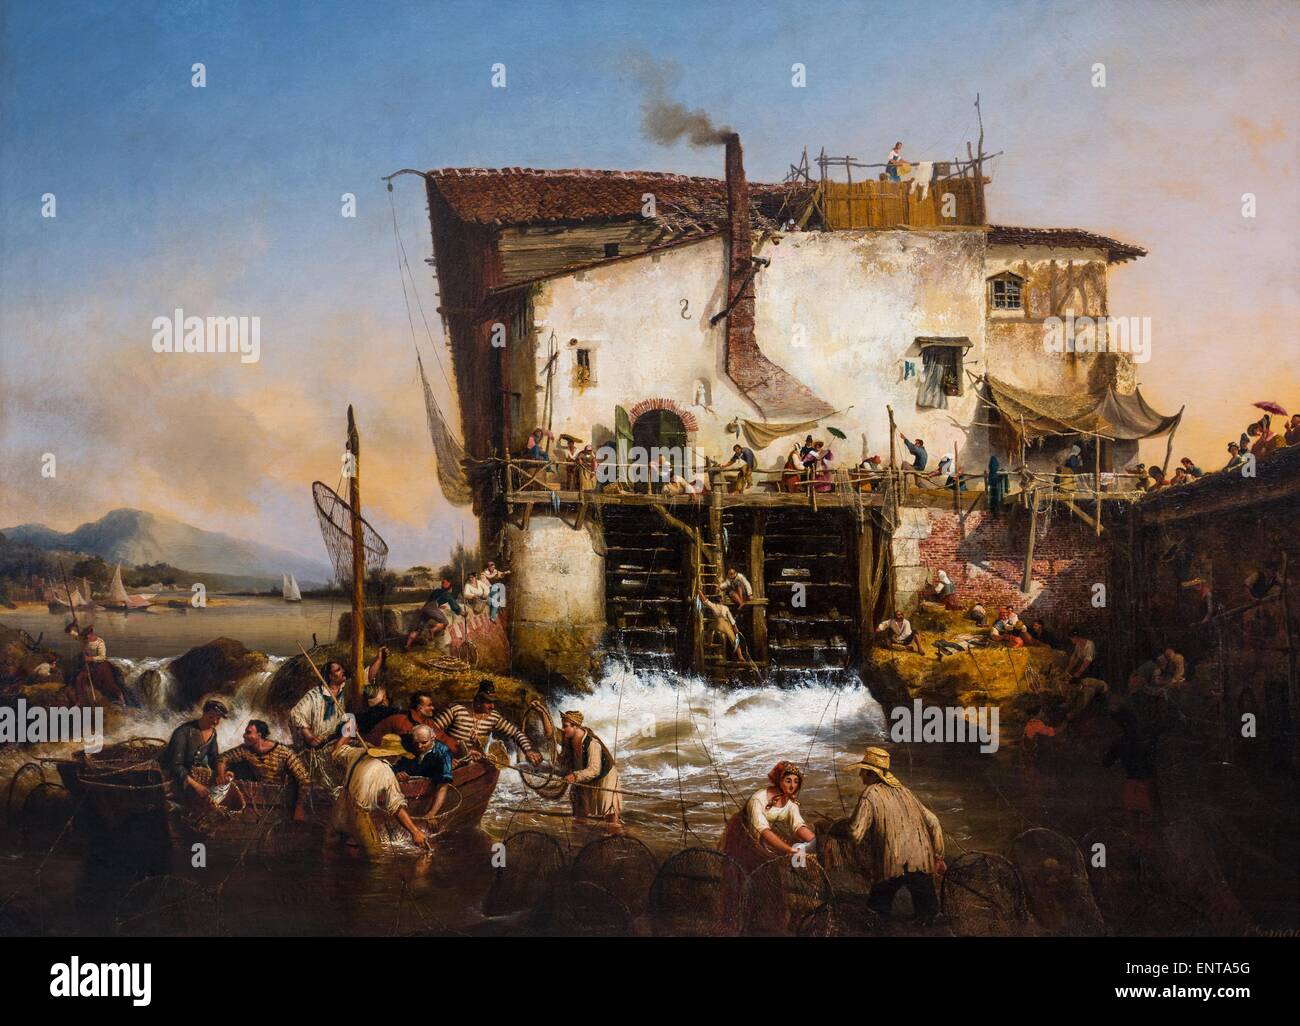 Den Fang von Alosas 25.10.2013 - Sammlung des 19. Jahrhunderts Stockfoto